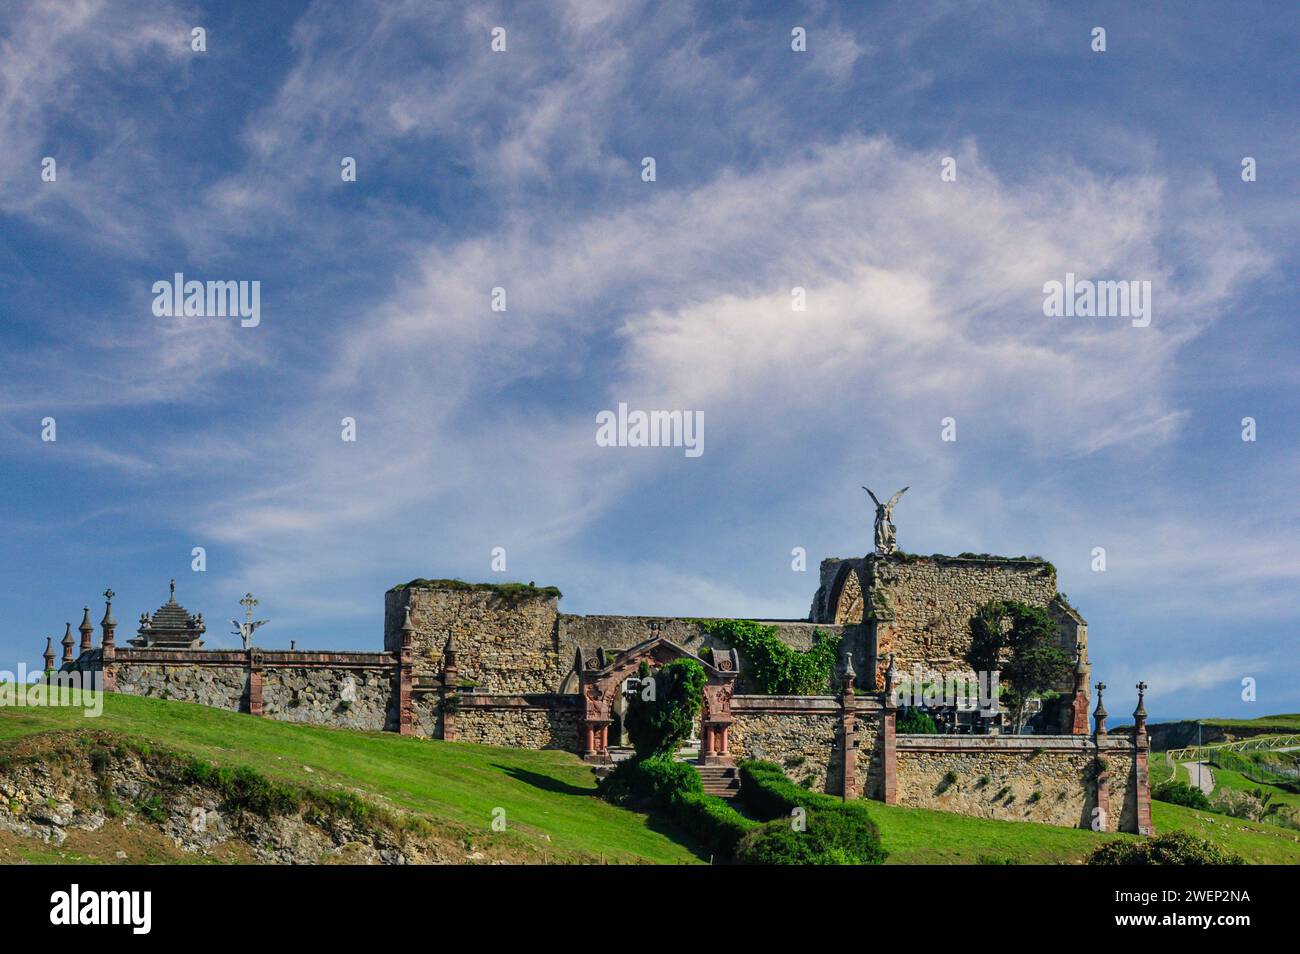 Auf den alten Steinmauern des historischen Friedhofs in Comillas steht unter einem dynamischen Himmel eine Statue eines befehlenden Engels Stockfoto